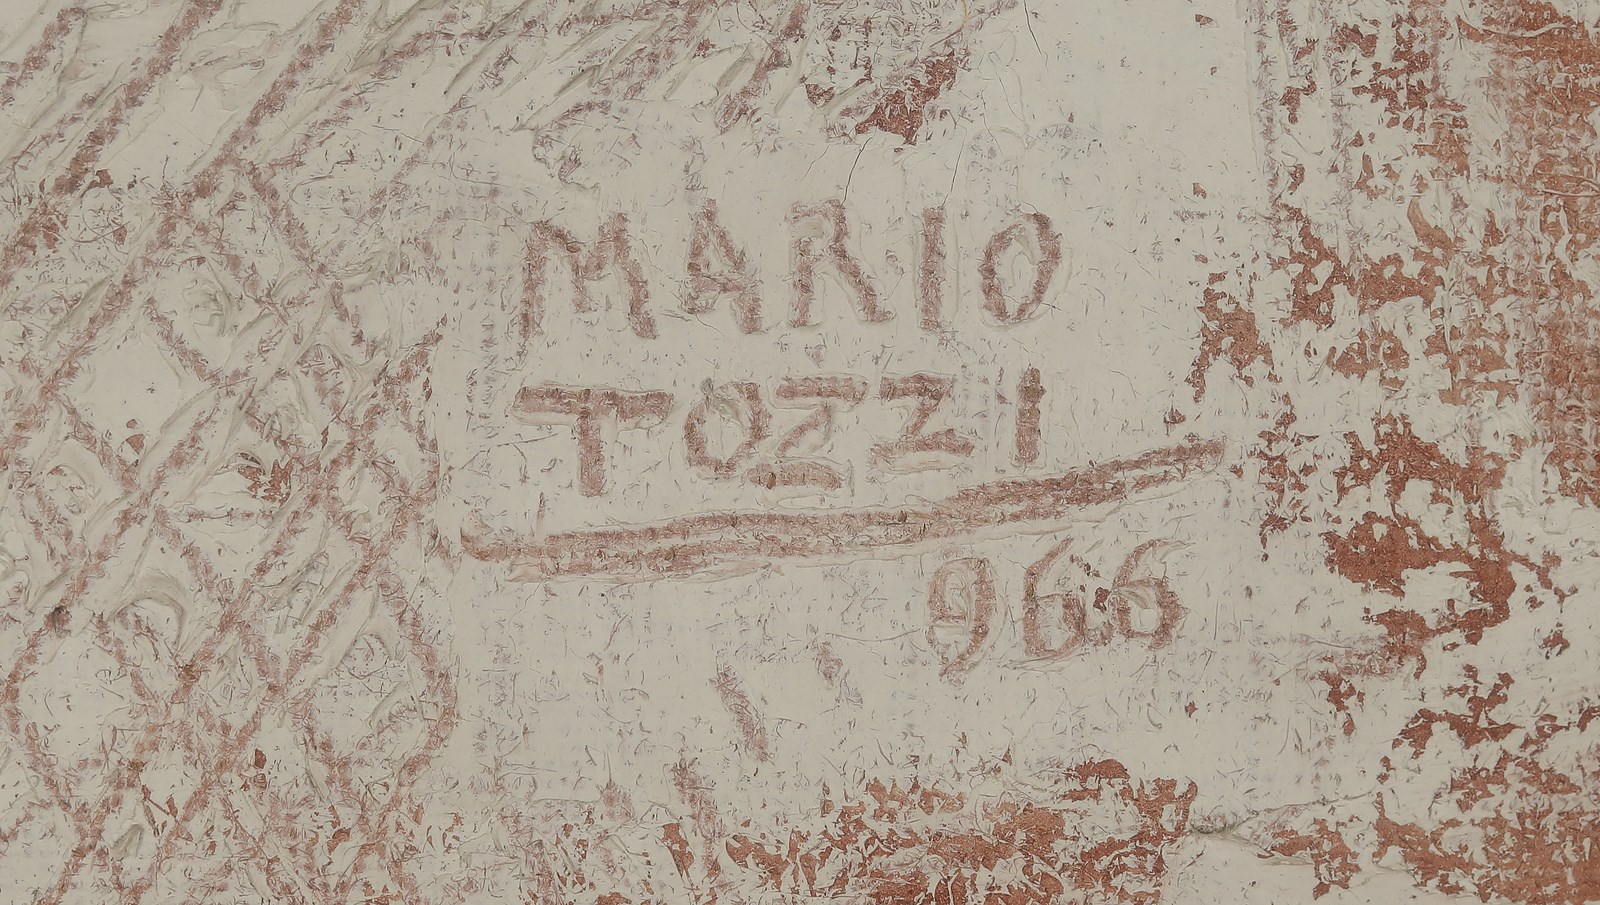 MARIO TOZZI Tower. - Image 2 of 3